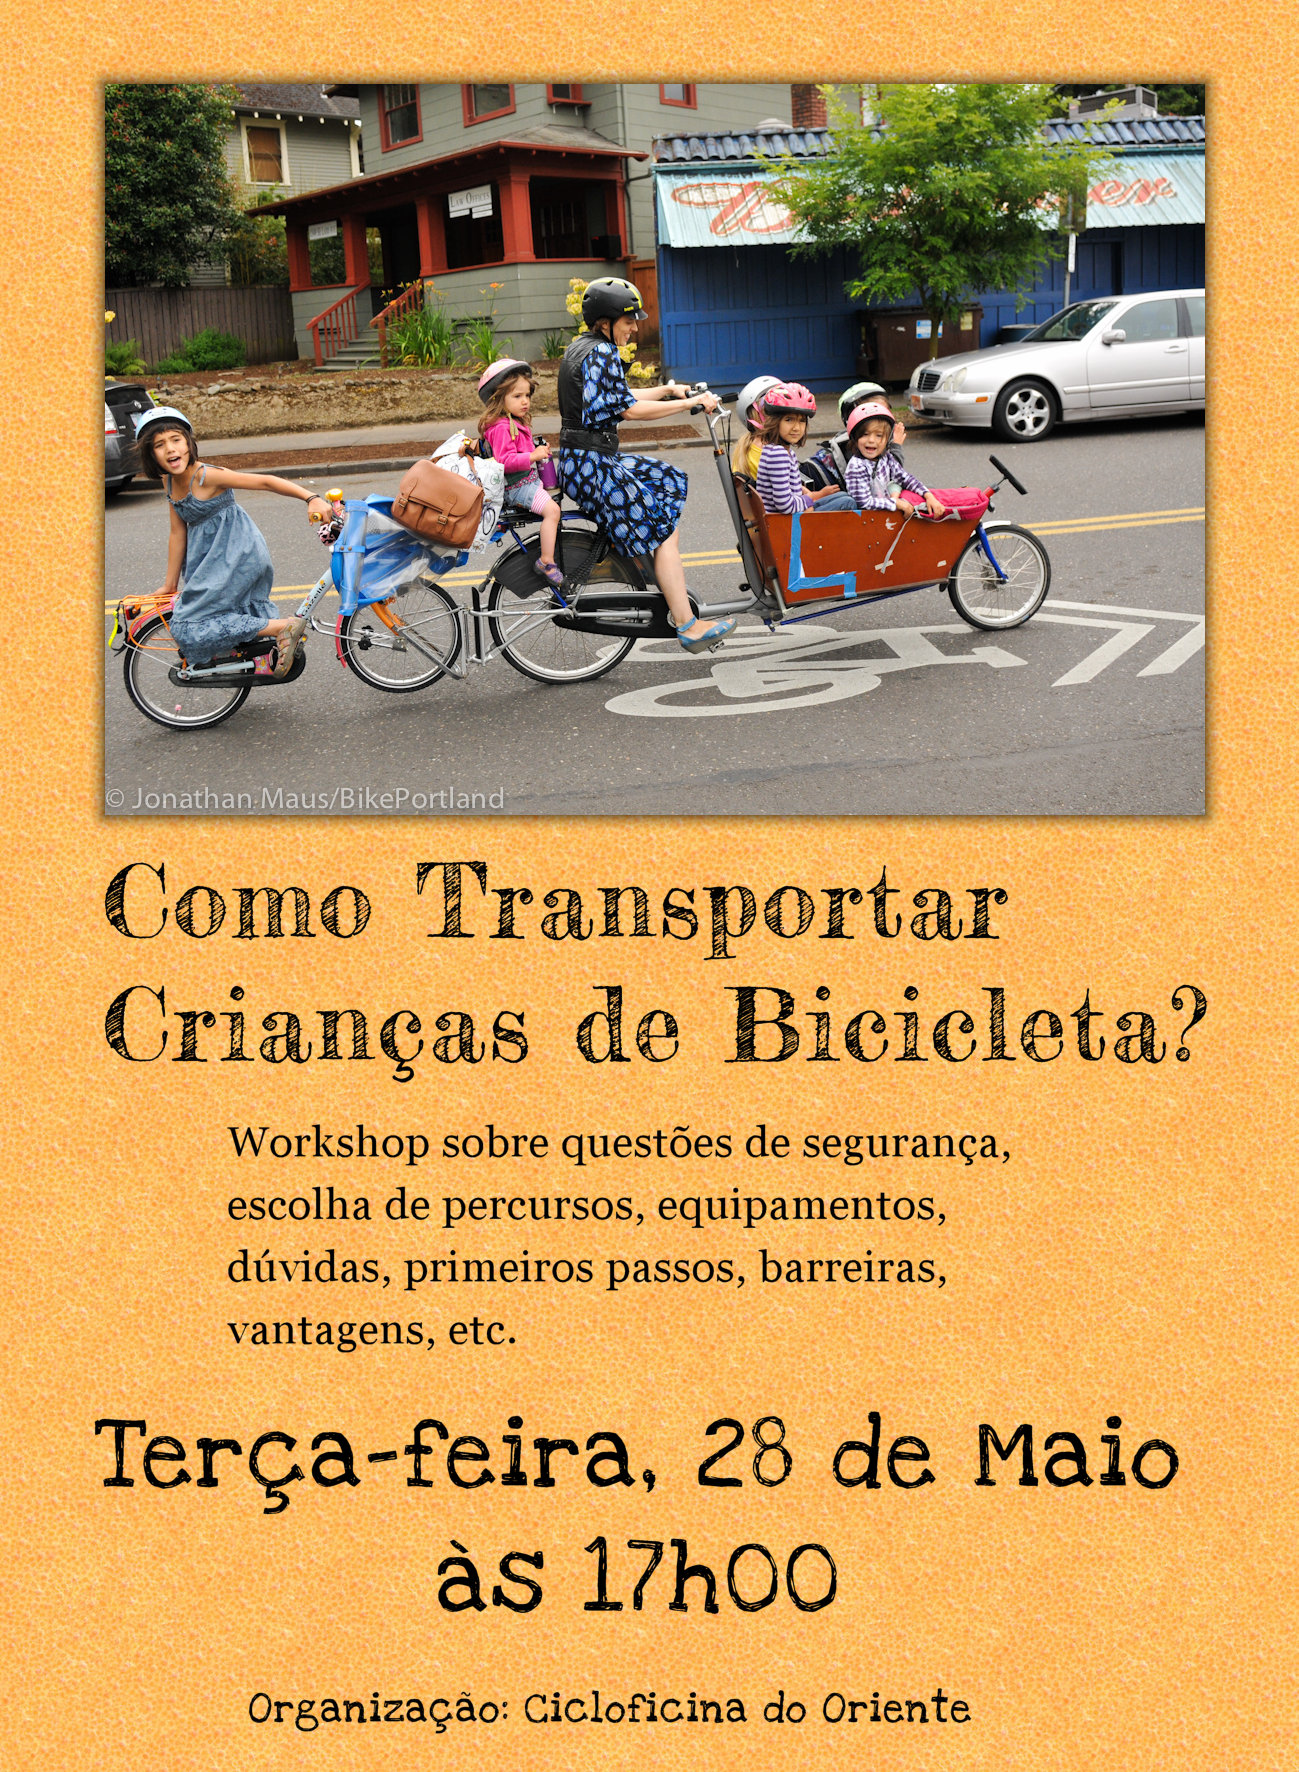 workshop transportar crianças em bicicleta - cartaz